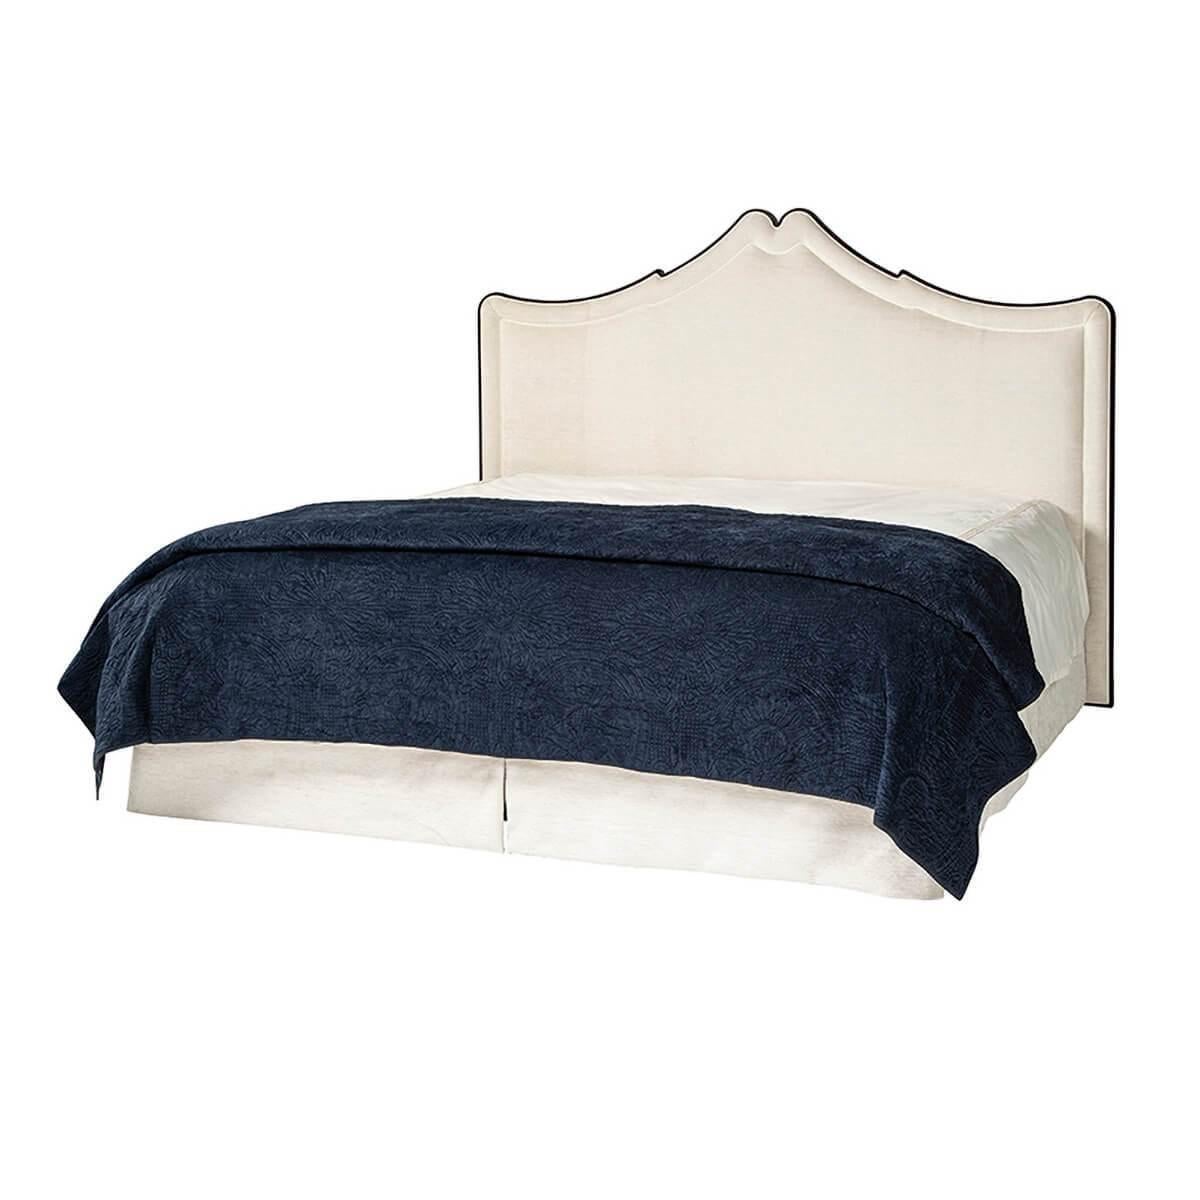 Dieses Polsterbett Classic ist die perfekte Ergänzung für jedes Schlafzimmer, das auf der Suche nach traditionellen Formen und modernen Ausstattungselementen für Komfort und Qualität ist.

Dieses Bett besteht aus einem massiven Buchenholzrahmen mit